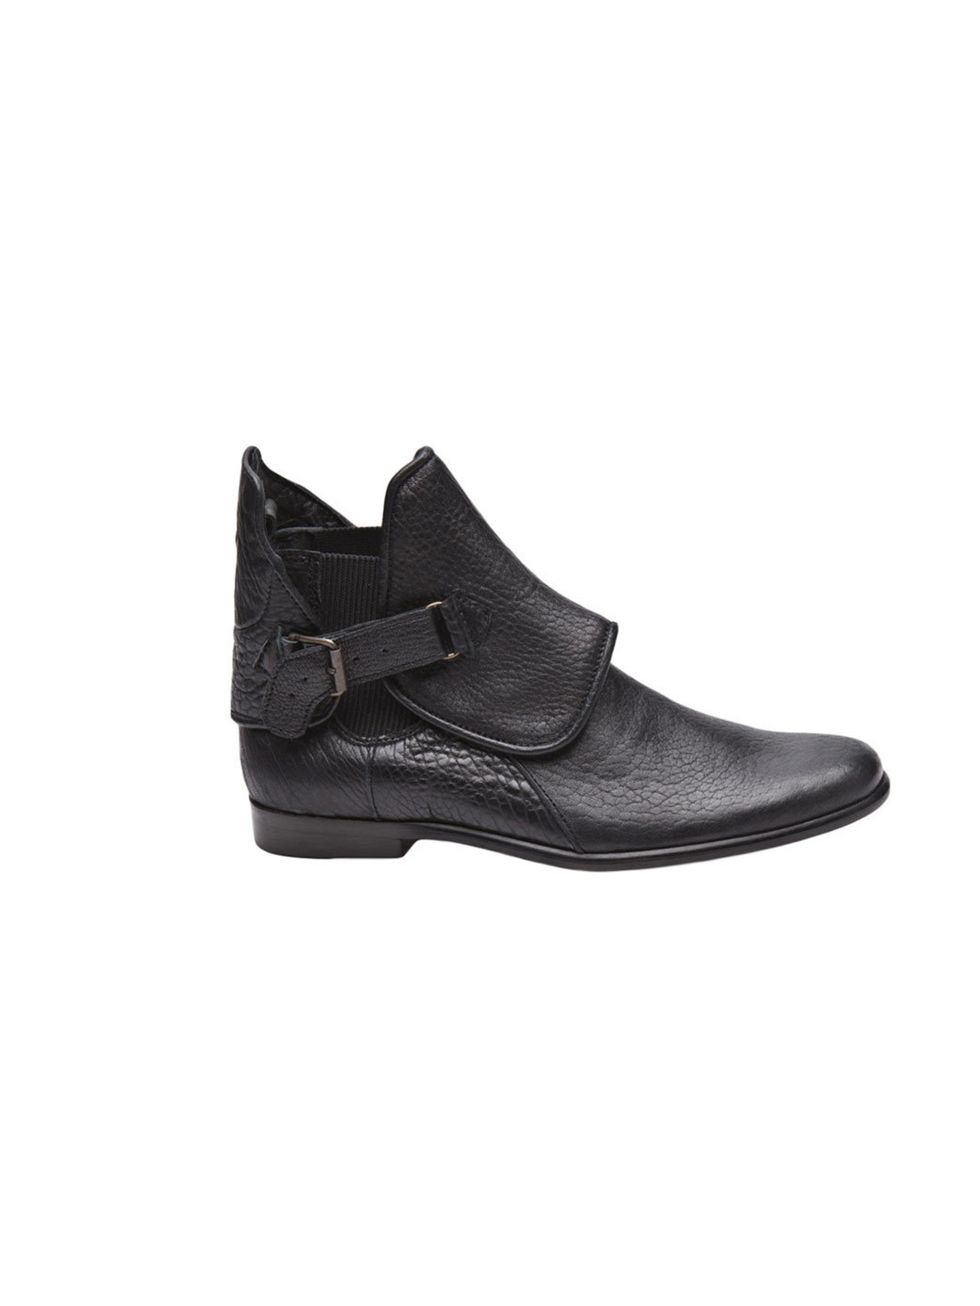 <p>Heimstone 'Hook' boots, £394, at <a href="http://www.farfetch.com/shopping/women/heimstone-hook-boot-item-10139895.aspx">Farfetch</a></p>